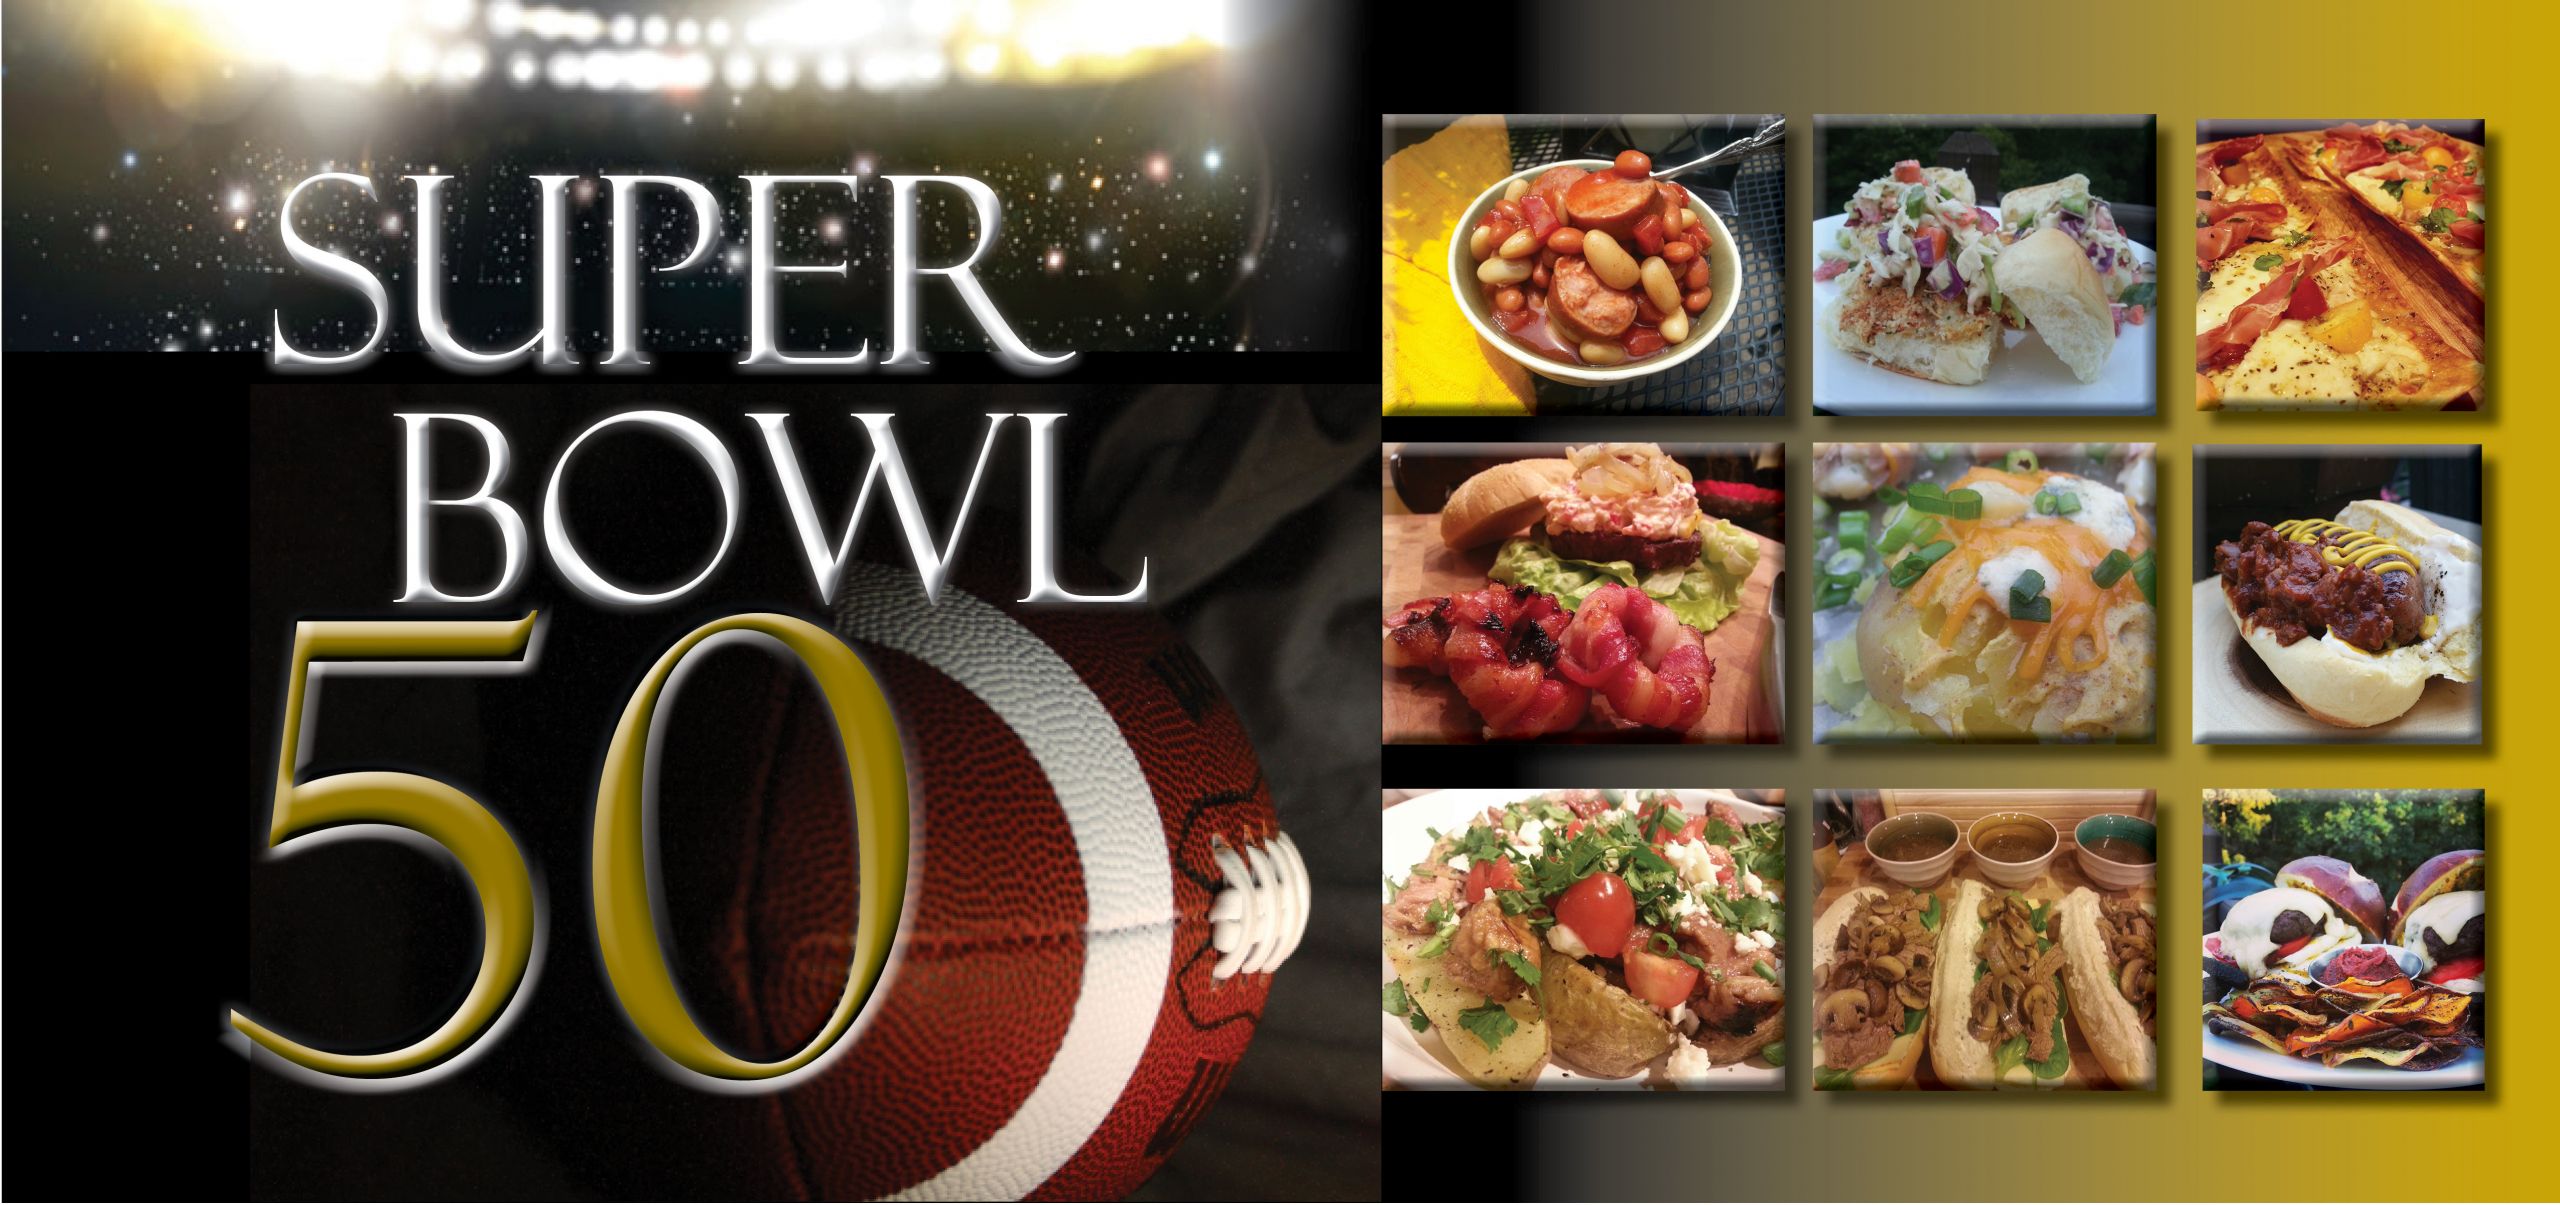 Super Bowl 50 Recipes
 23 FAN Tastic Super Bowl Party Recipes